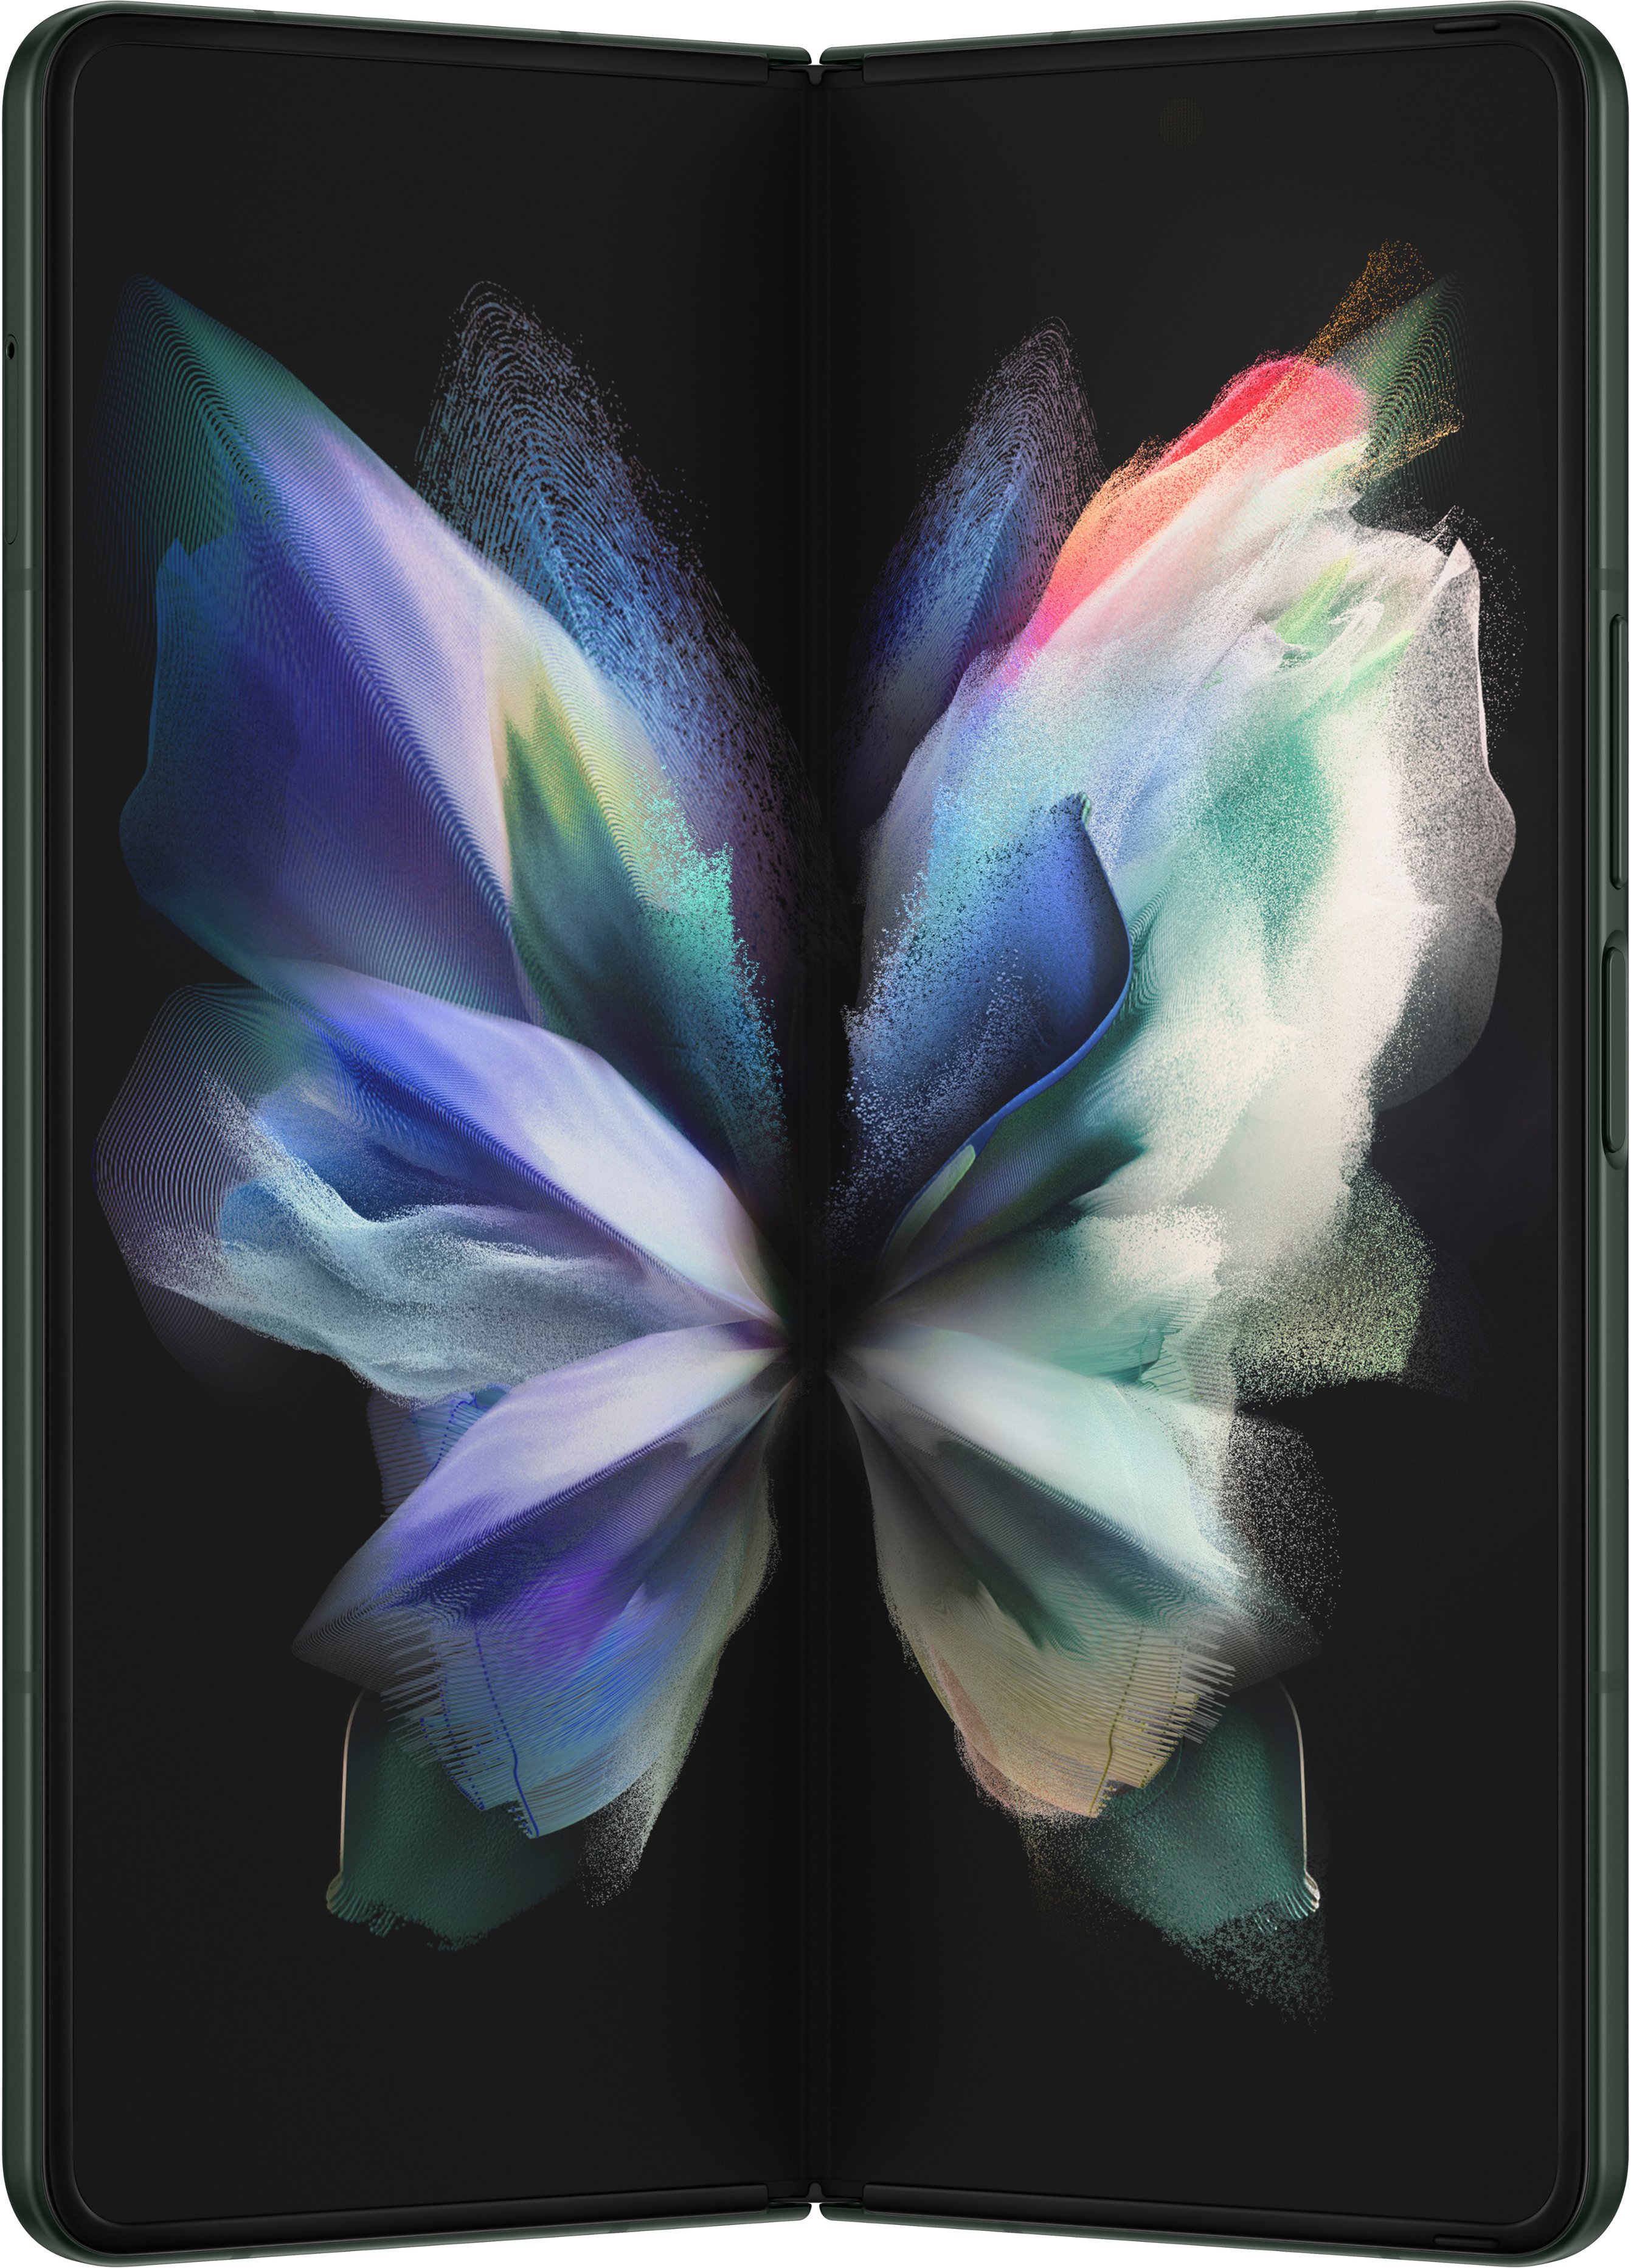 Samsung Galaxy Z Fold3 5G Phantom Green 256GB (Verizon)